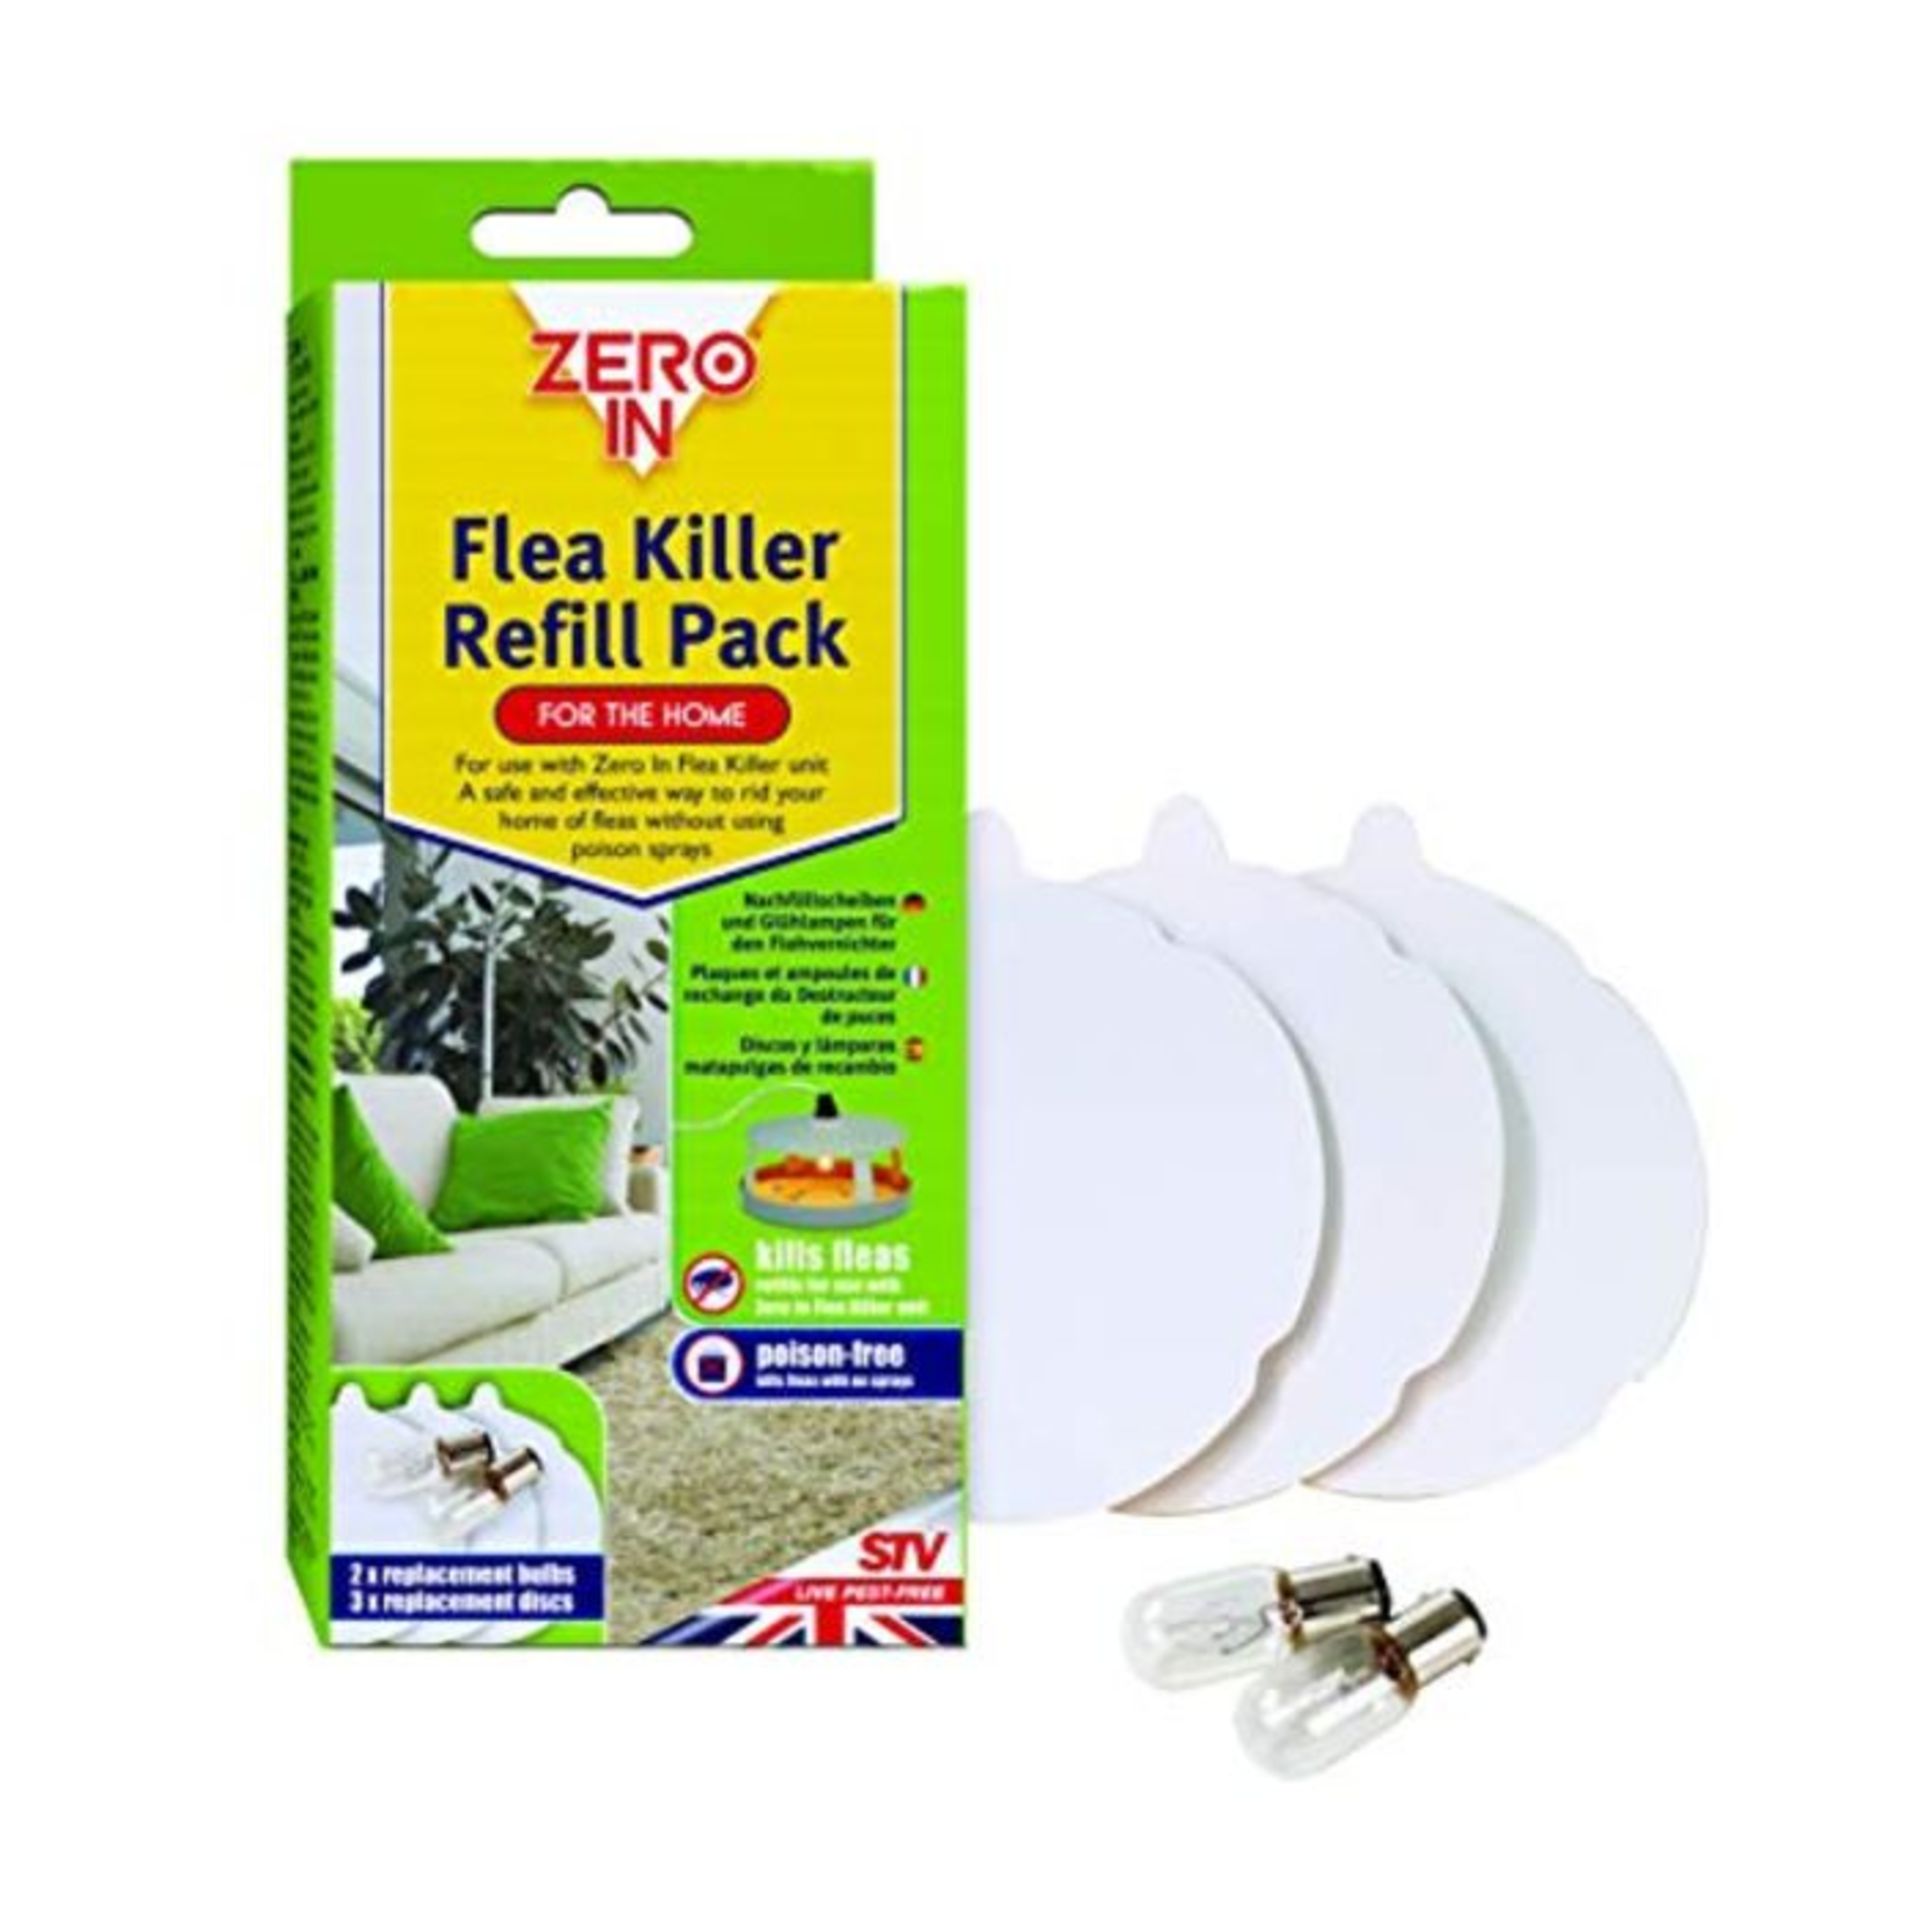 Zero In Flea Killer Refill Pack (3 Refill Discs and 2 Spare Lamps)